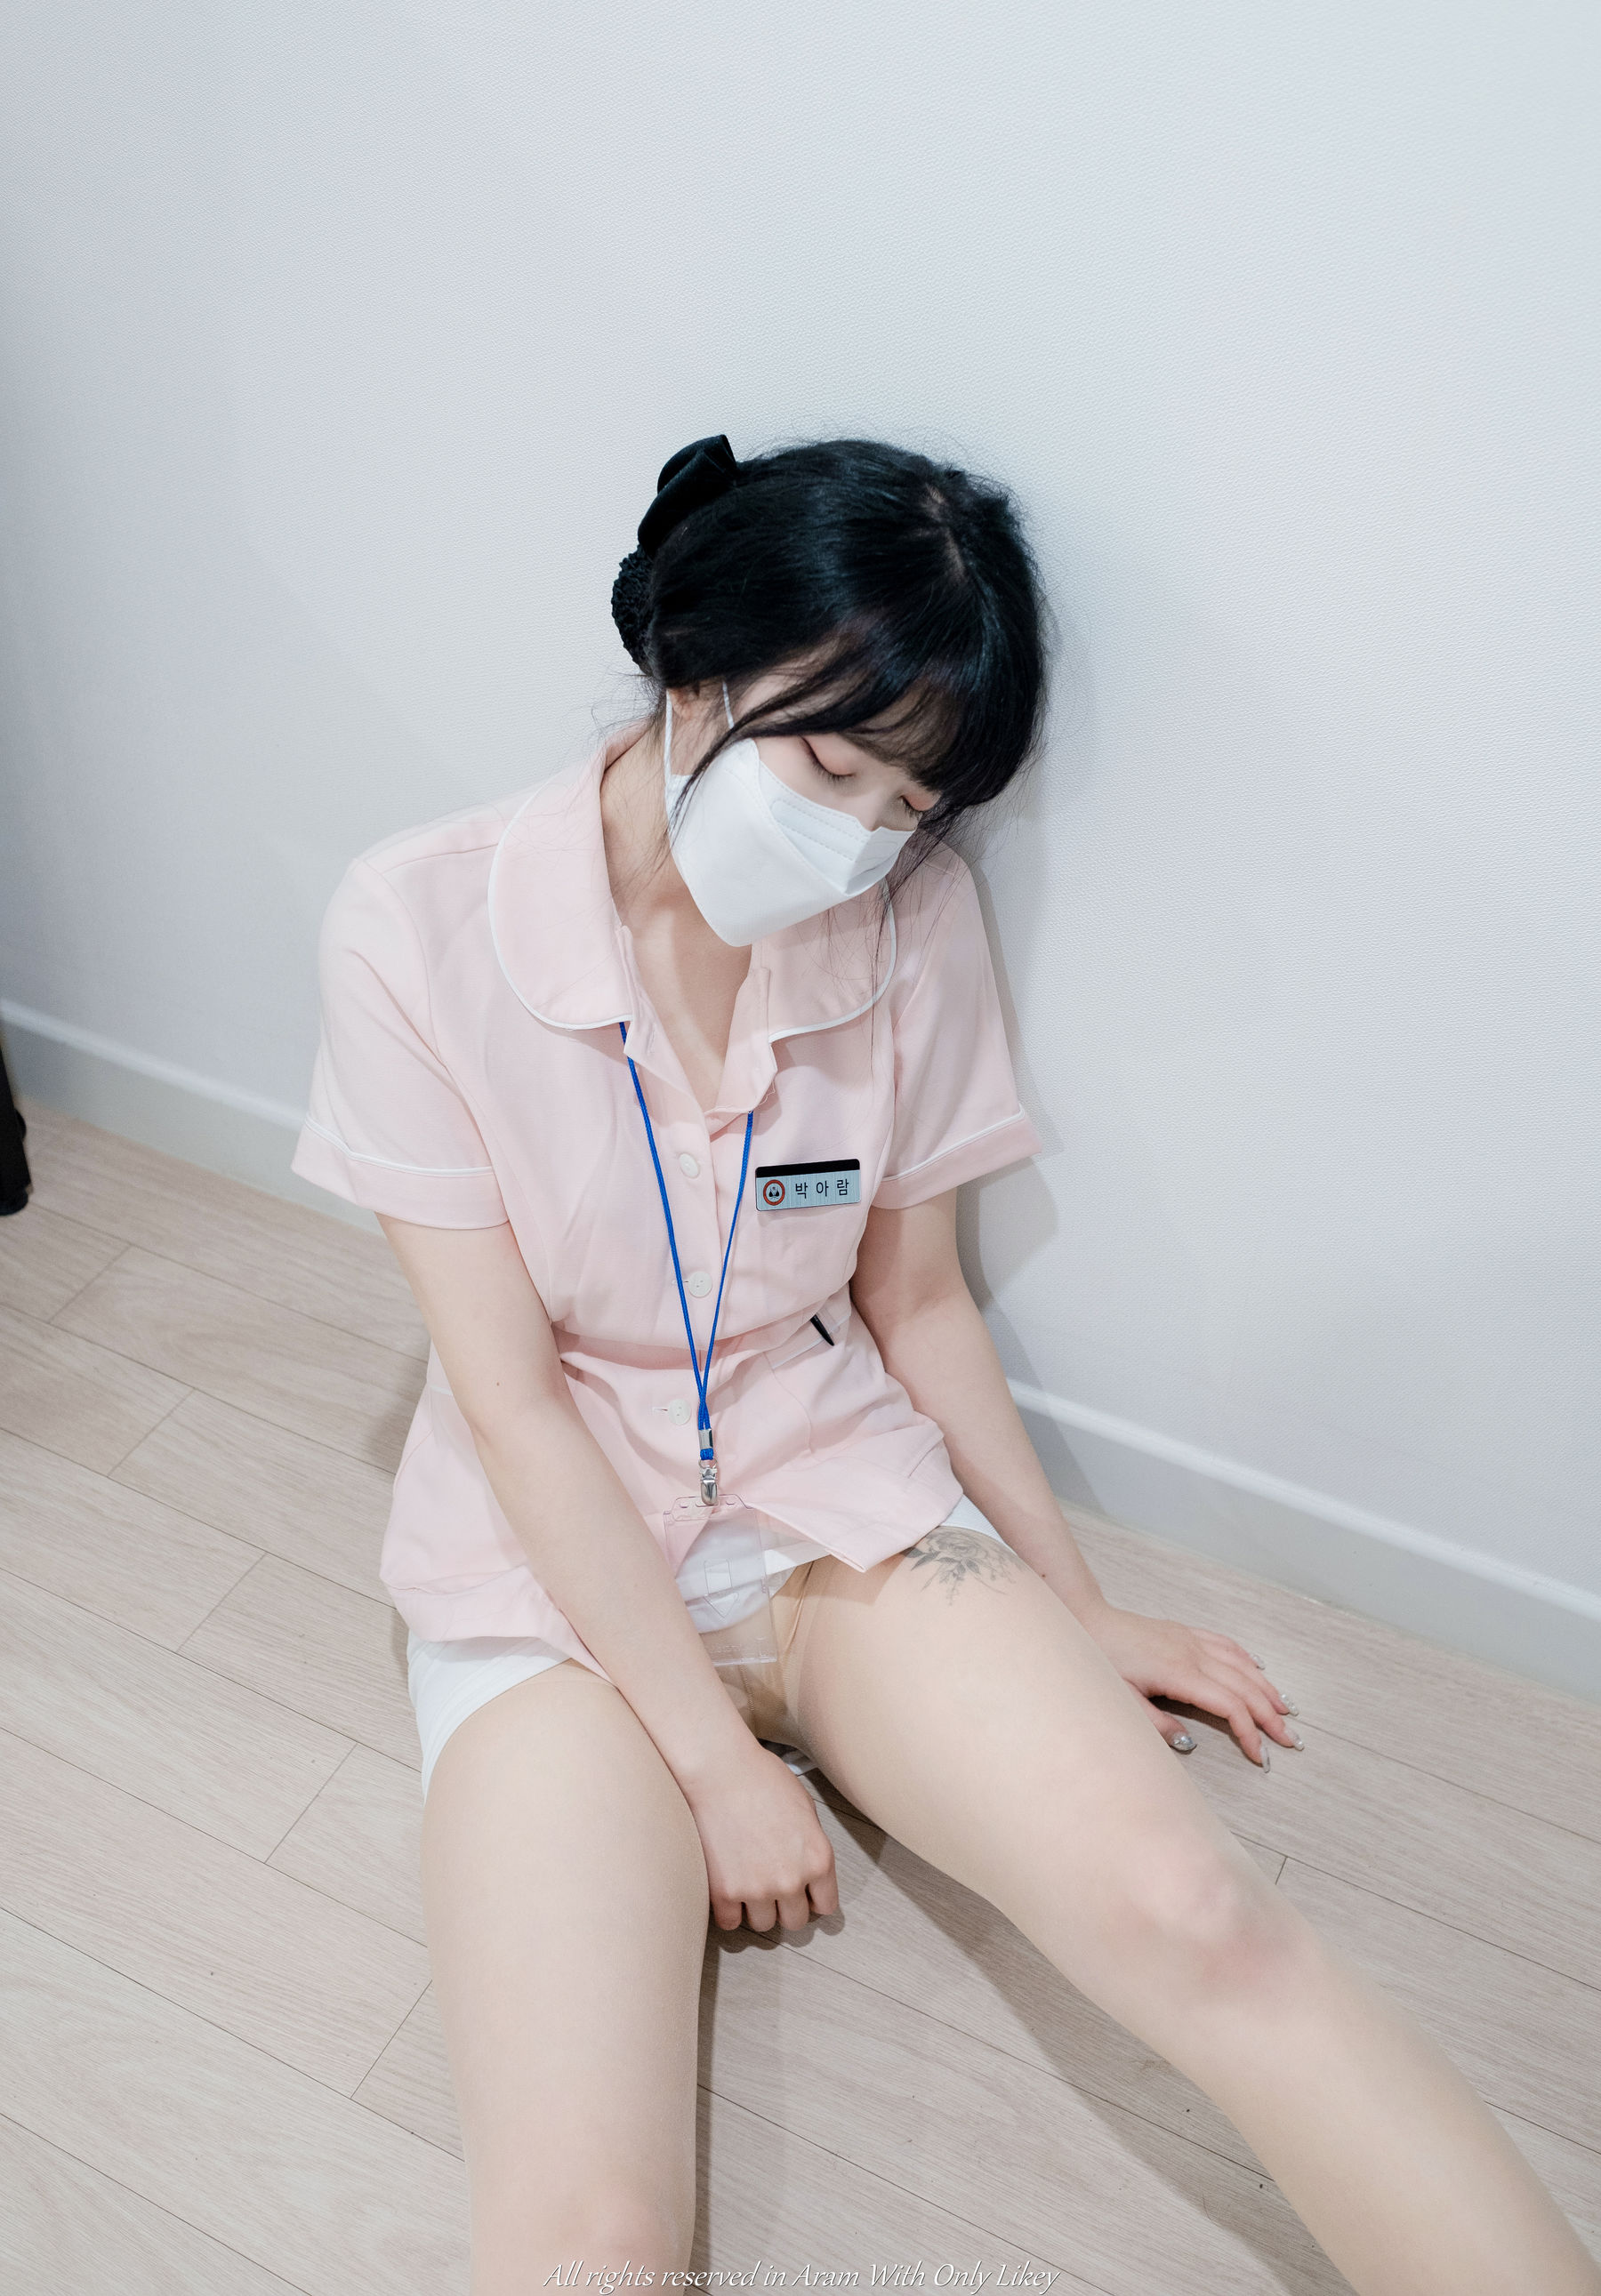 [LIKEY] Aram - A urologist Nurse/(54P)